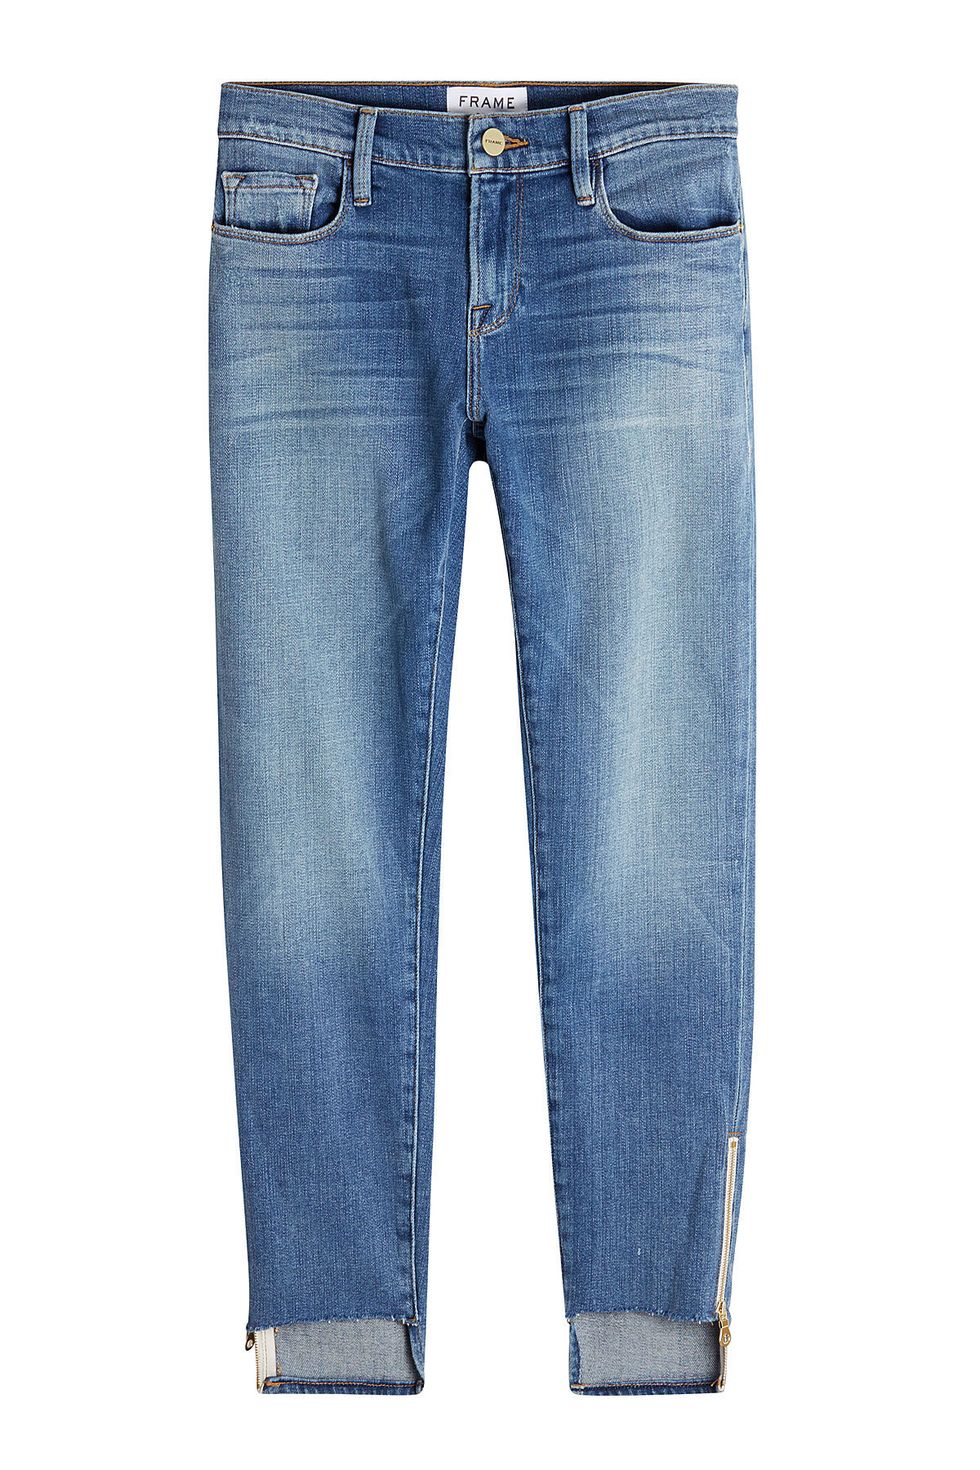 jeans quali scegliere per essere sexy